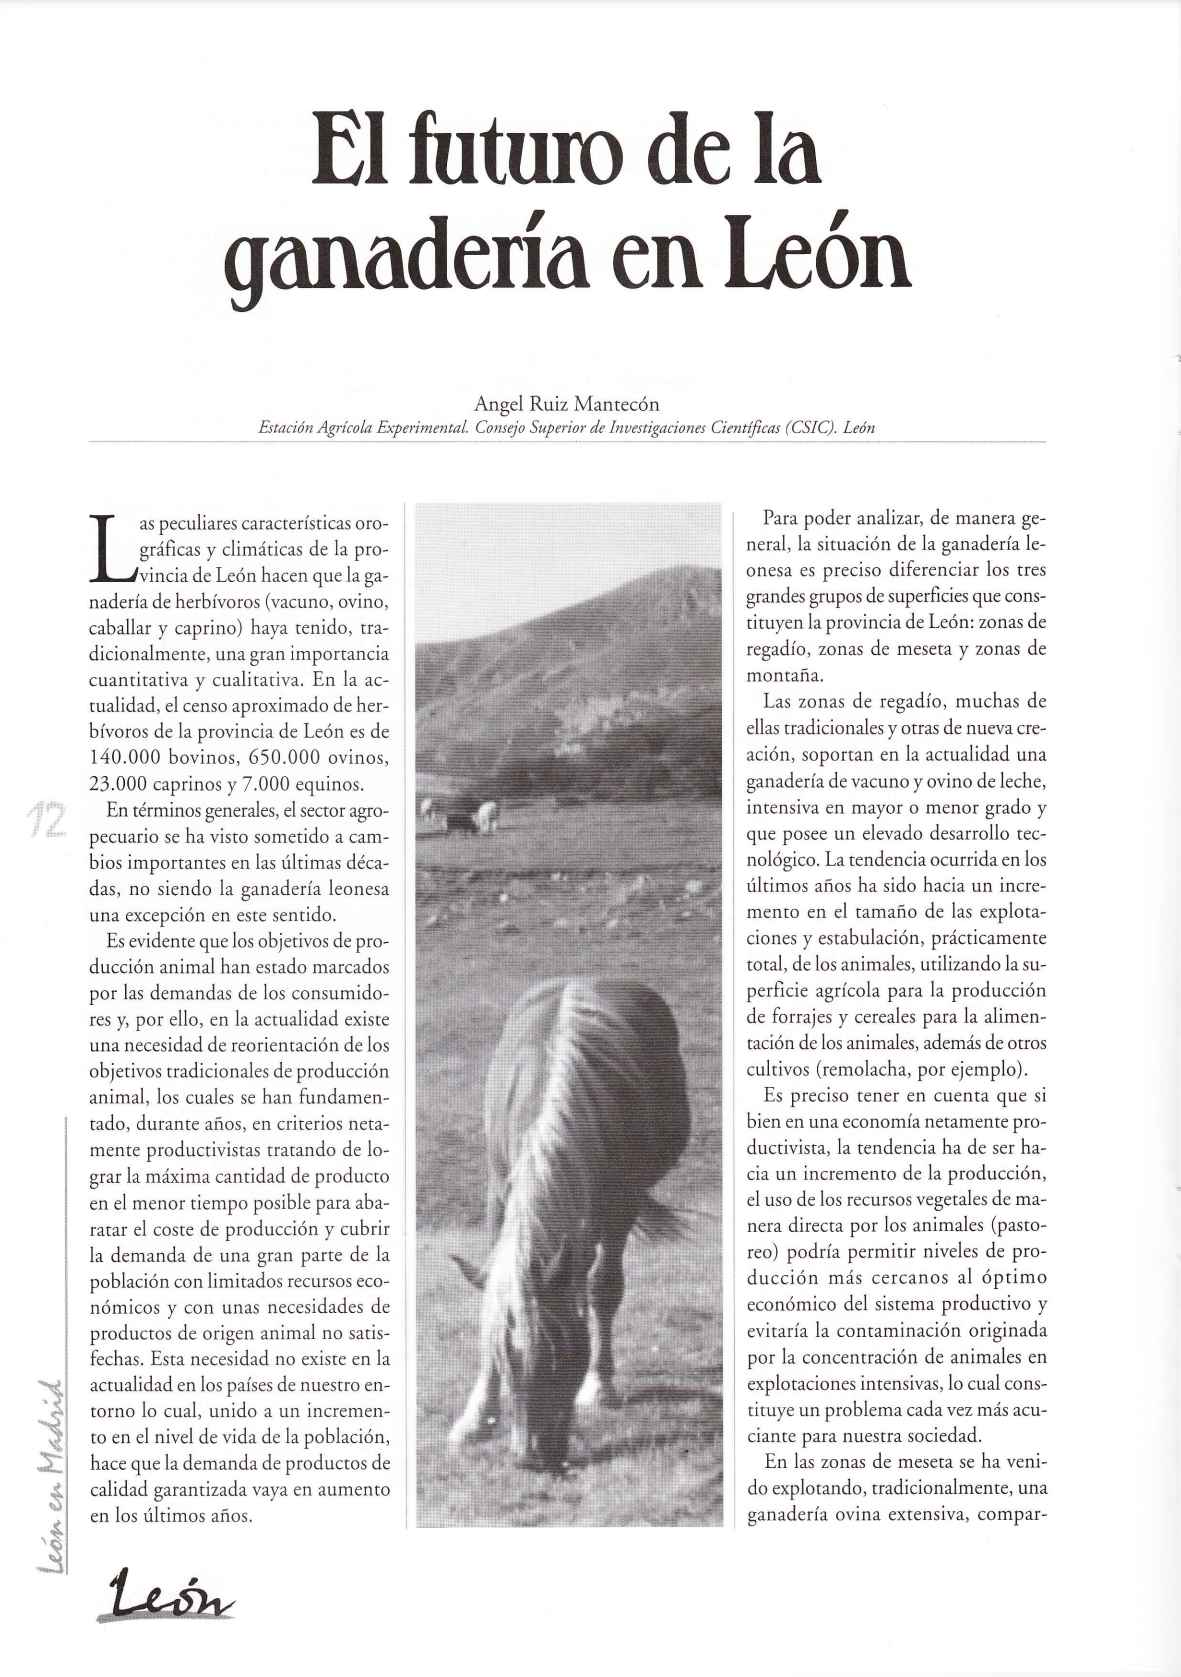 El futuro de la ganadería en León